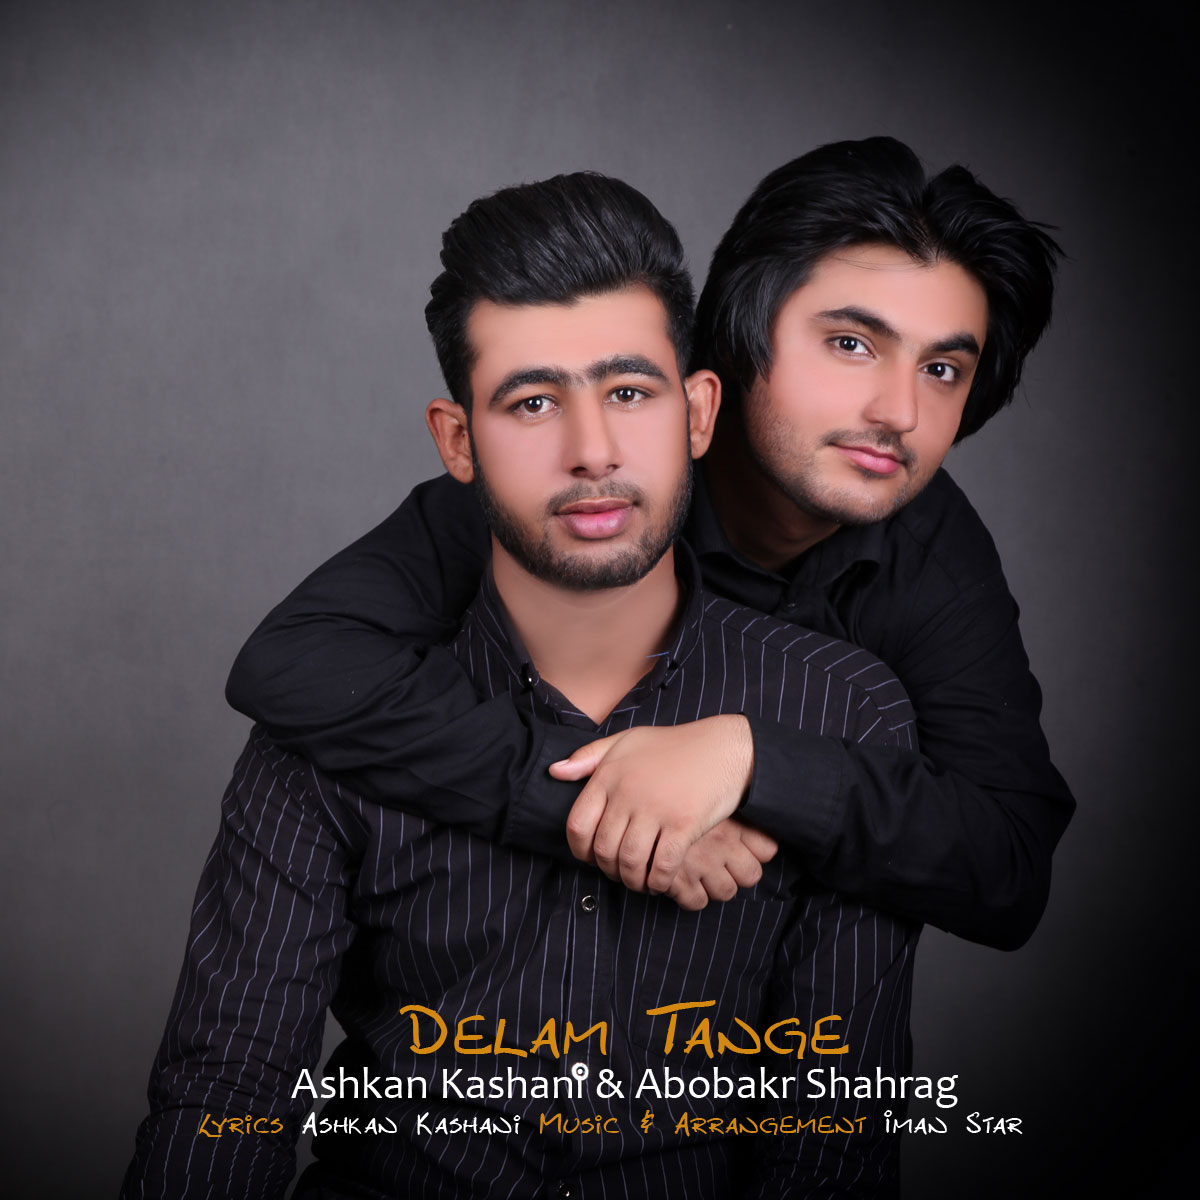 Ashkan Kashani & Abobakr Shahrag – Delam Tange